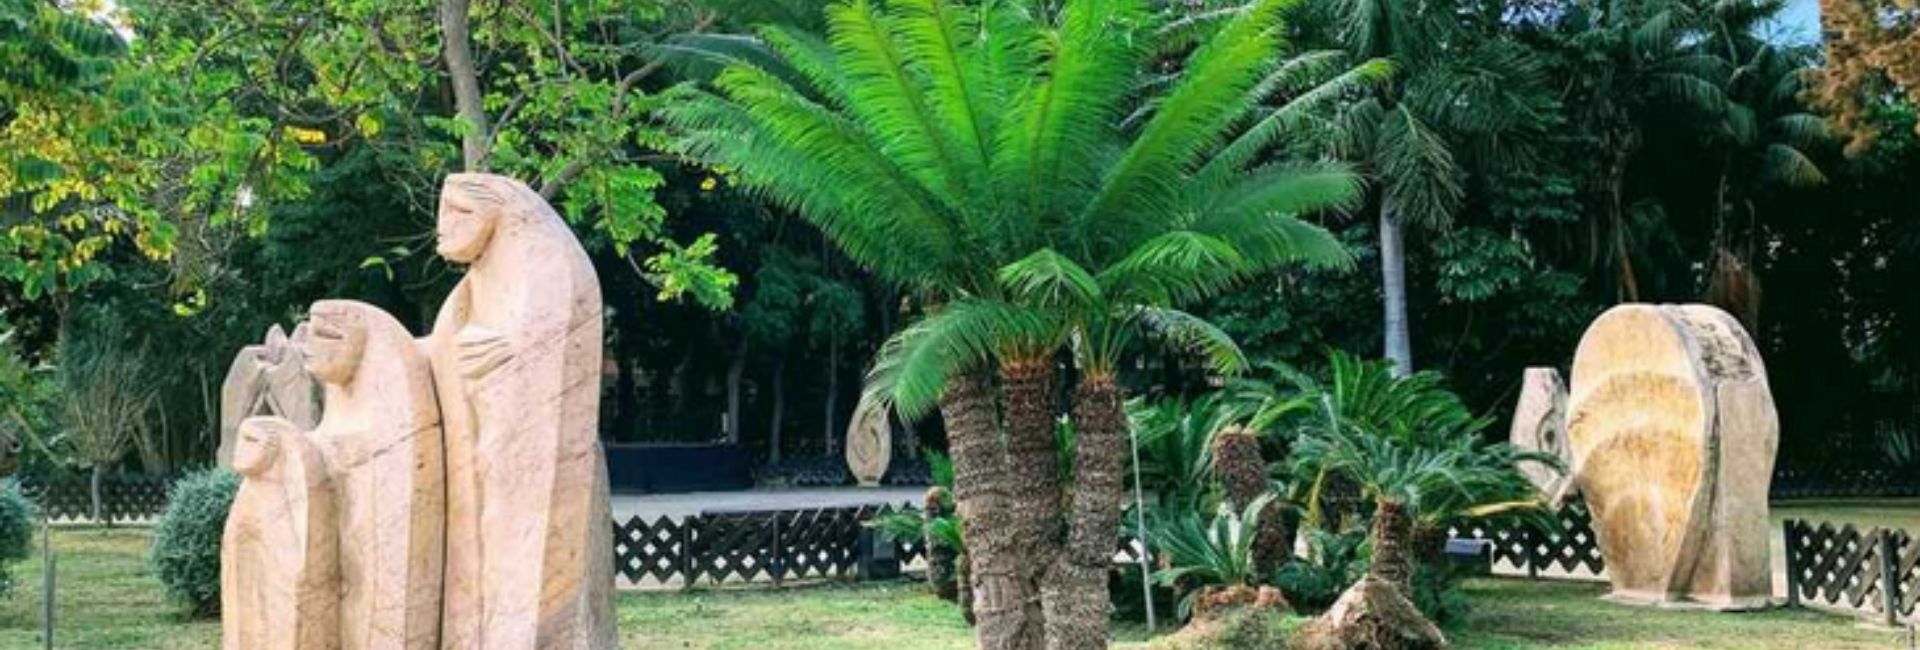 Parque Botánico-Orquidario de la Vega